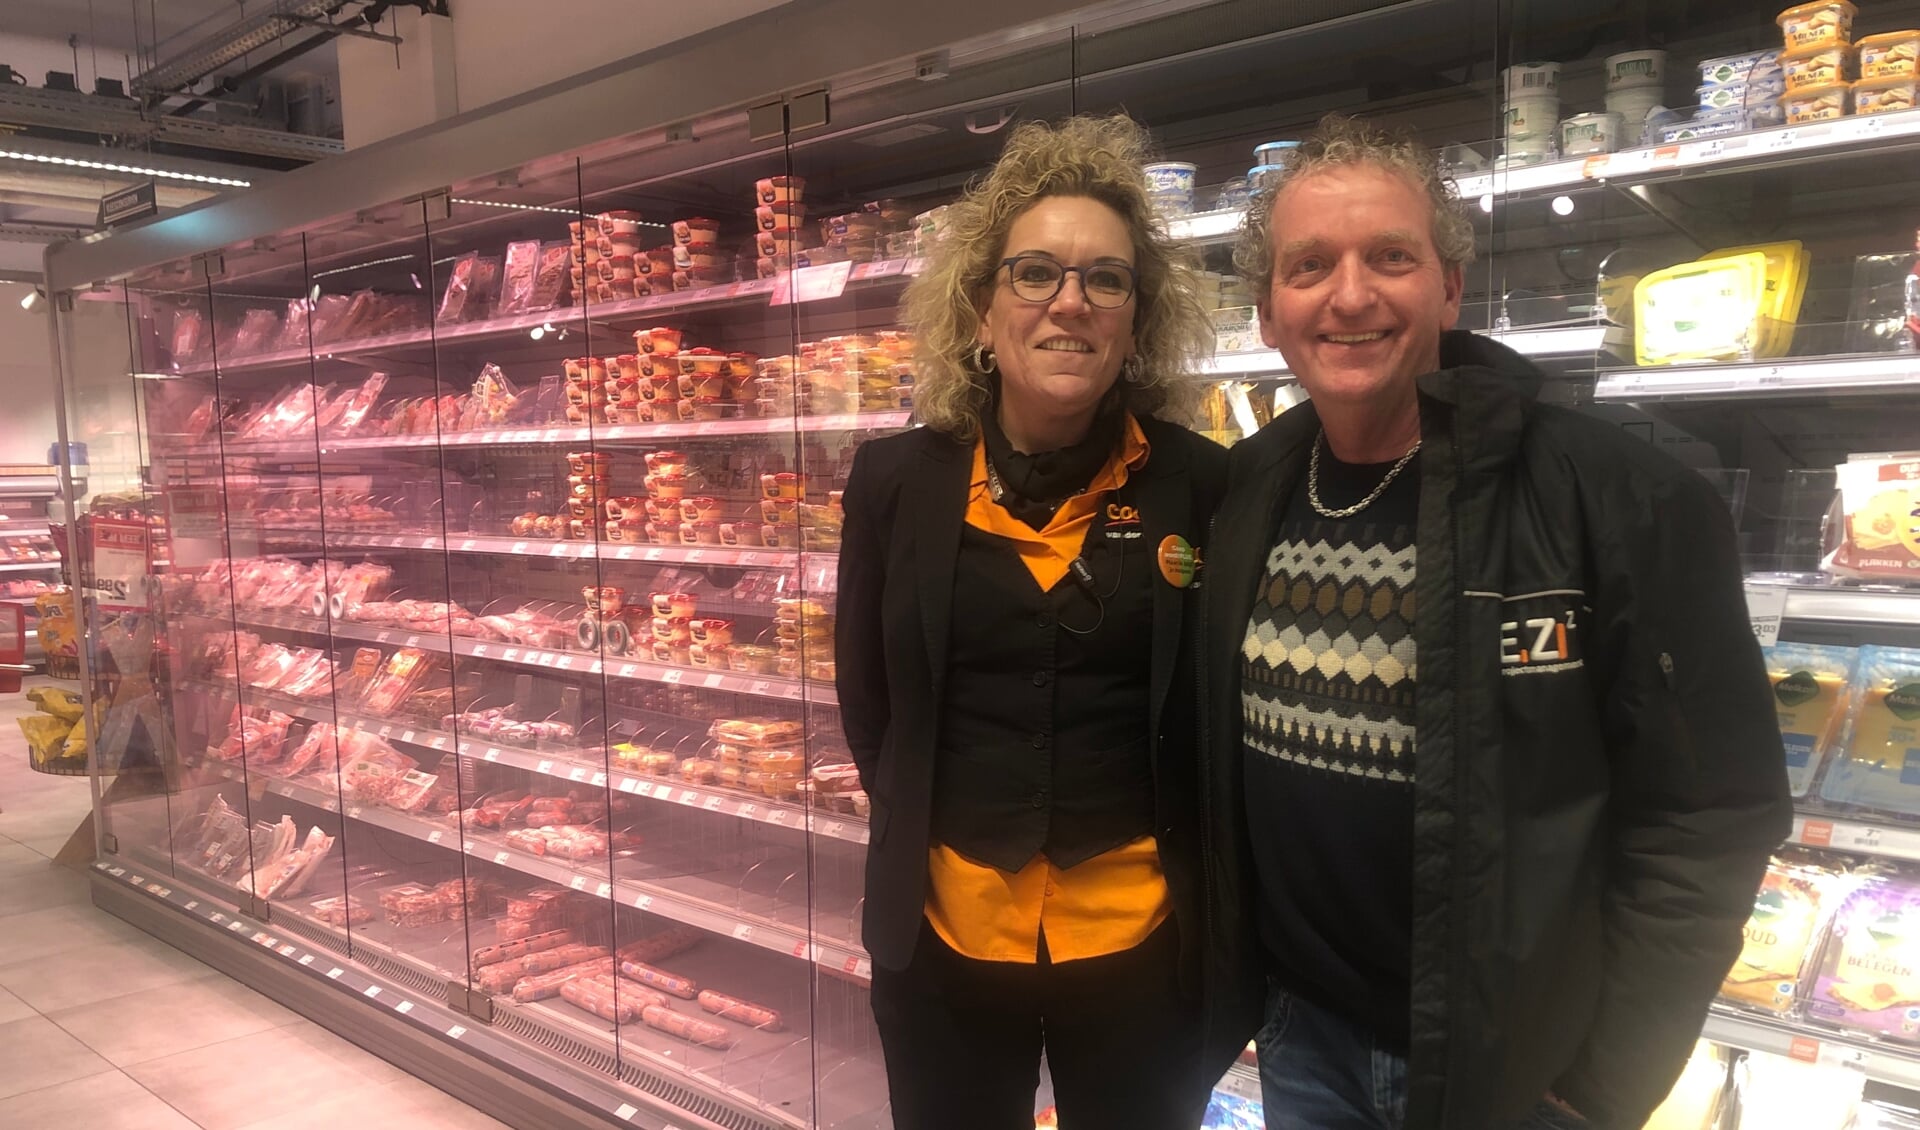 De schappen raakten vorige week steeds leger in de supermarkt van Monique en John van der Voort. Foto: PR